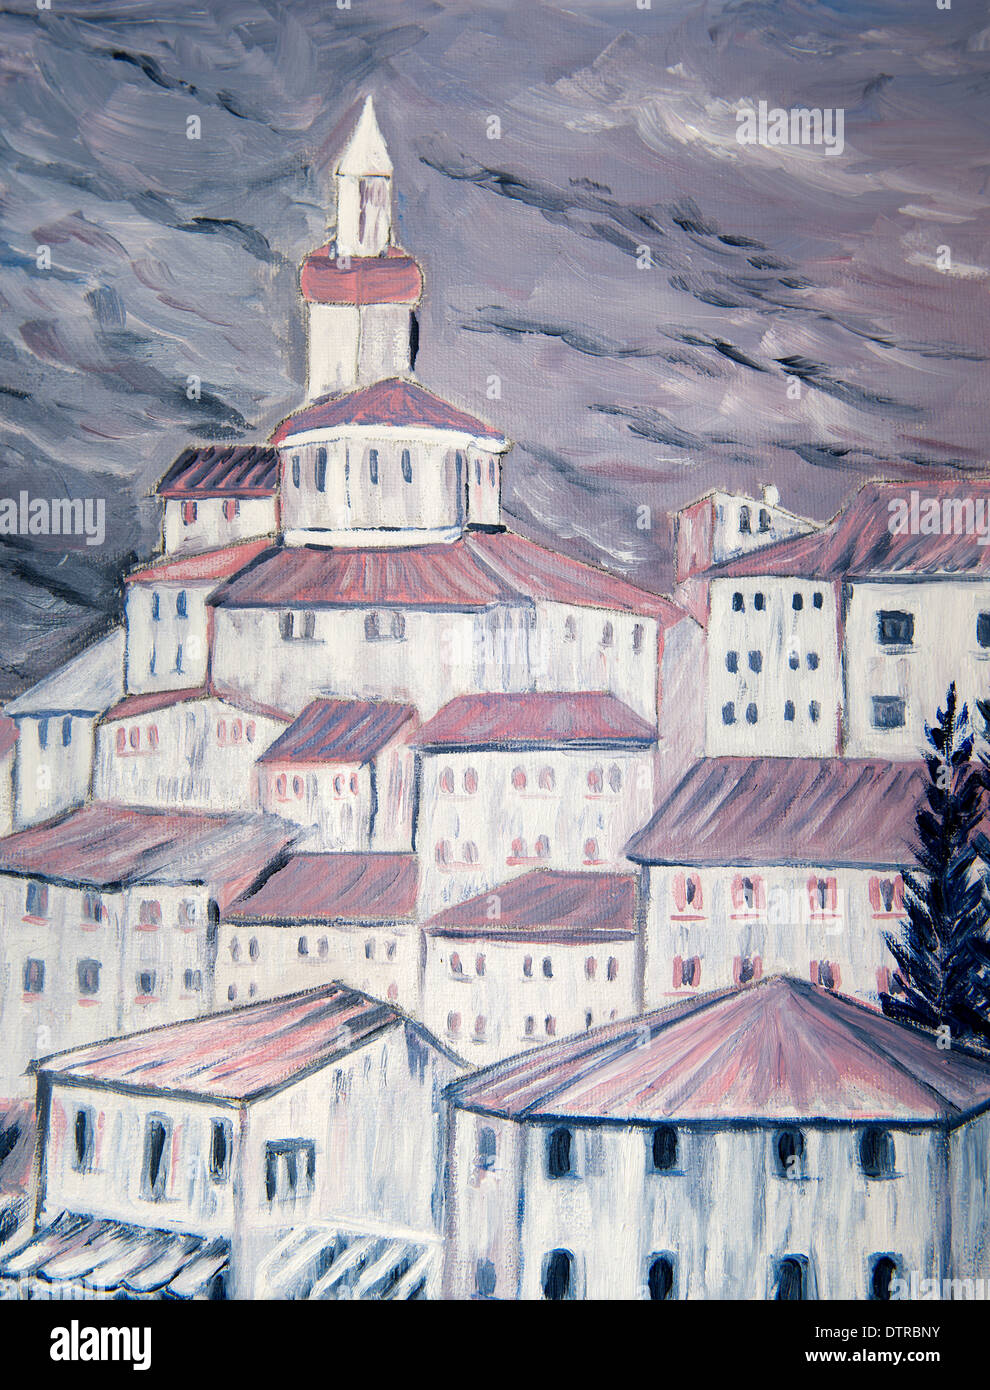 Peinture d'un village sur une colline Banque D'Images